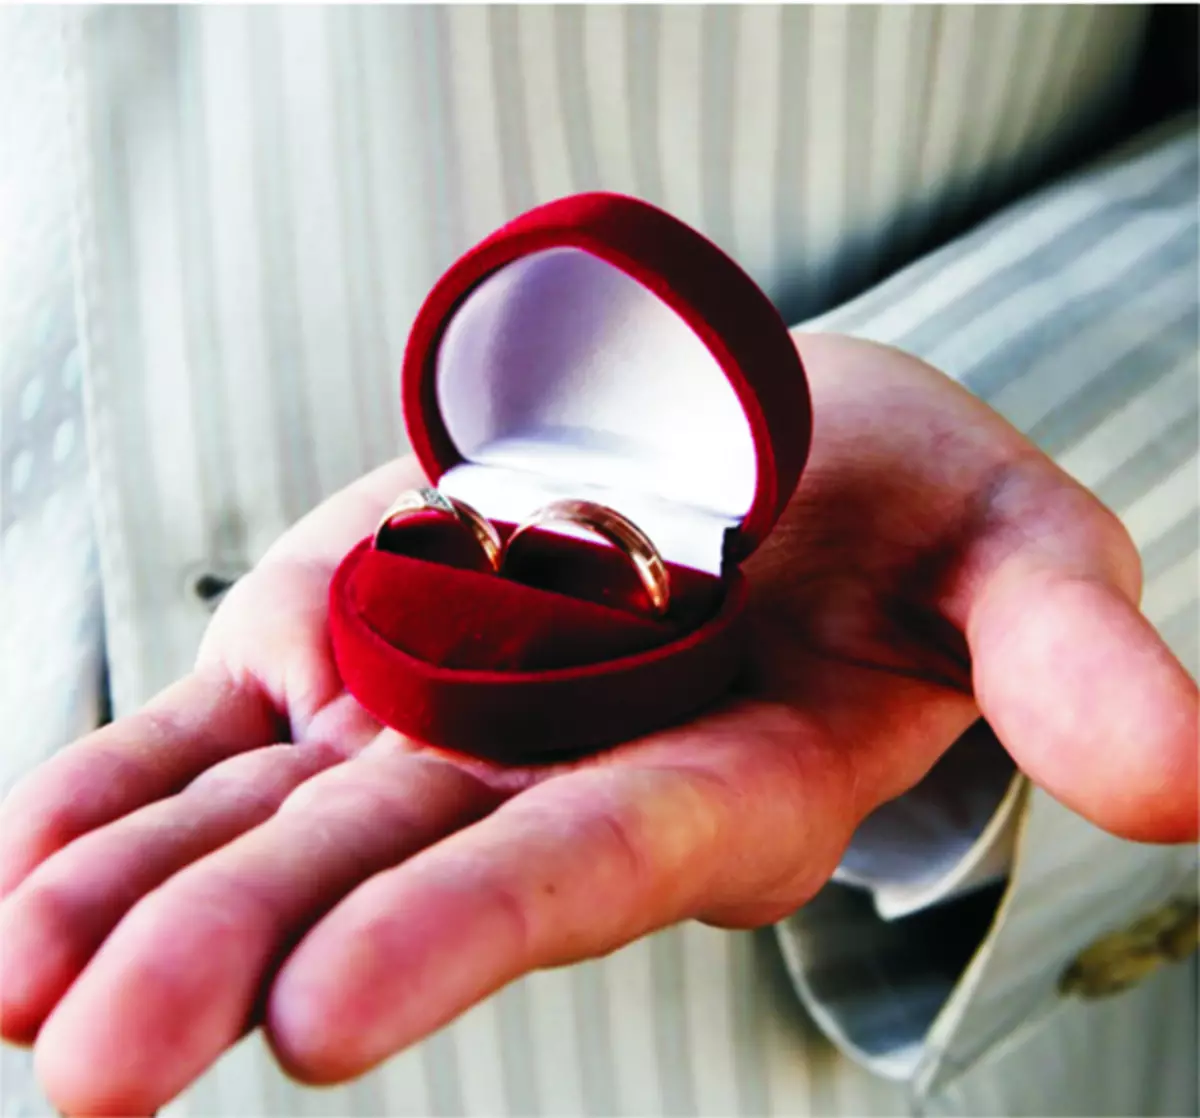 Кольцо в коробочке для предложения руки и сердца